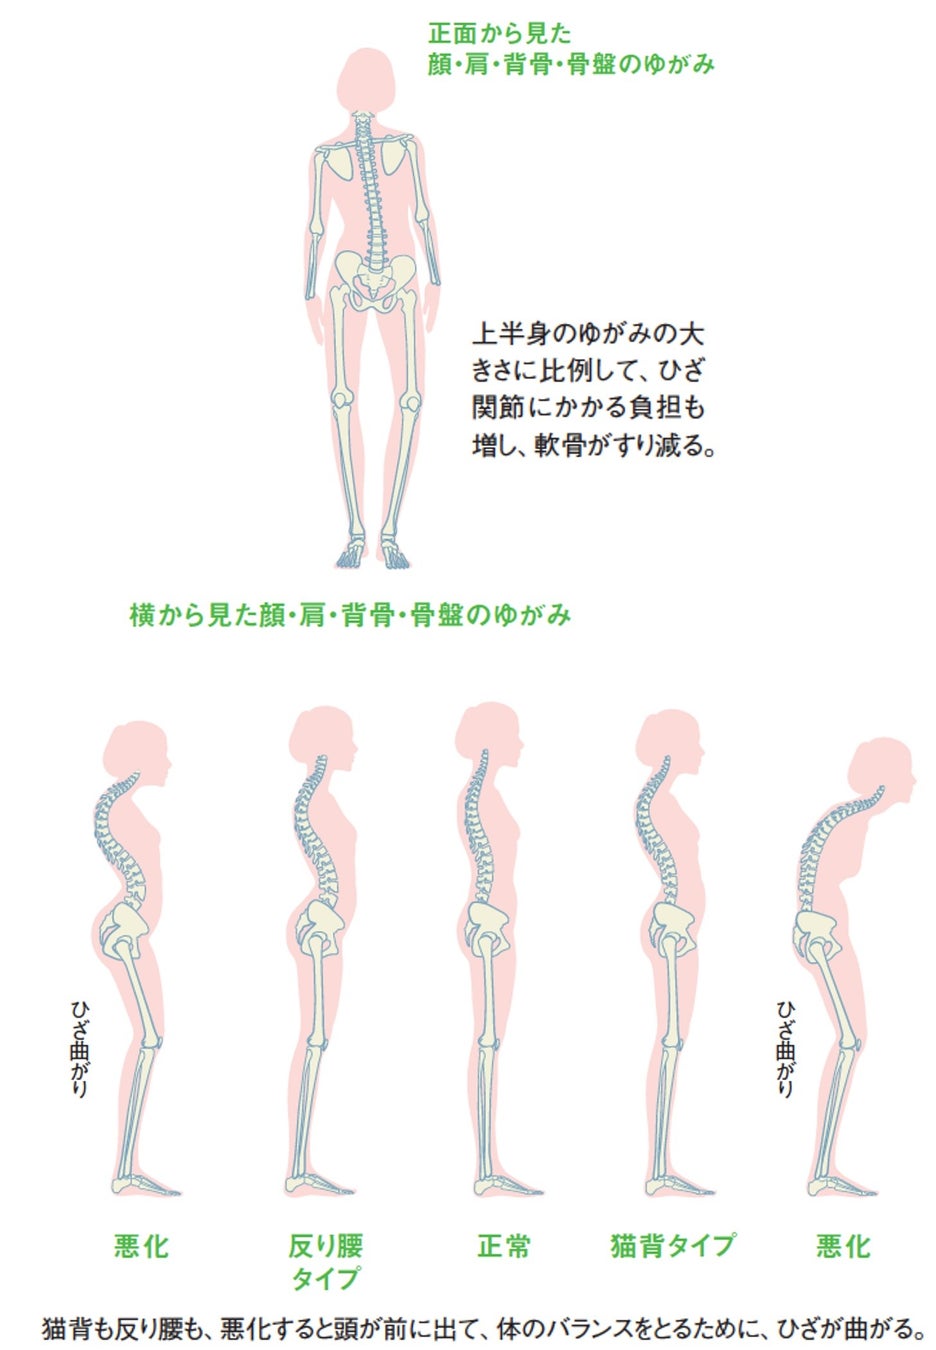 世界初！精度高く姿勢を整えることで、ひざ痛を解消するメソッドが健康誌『わかさ』に掲載された感謝キャンペ...